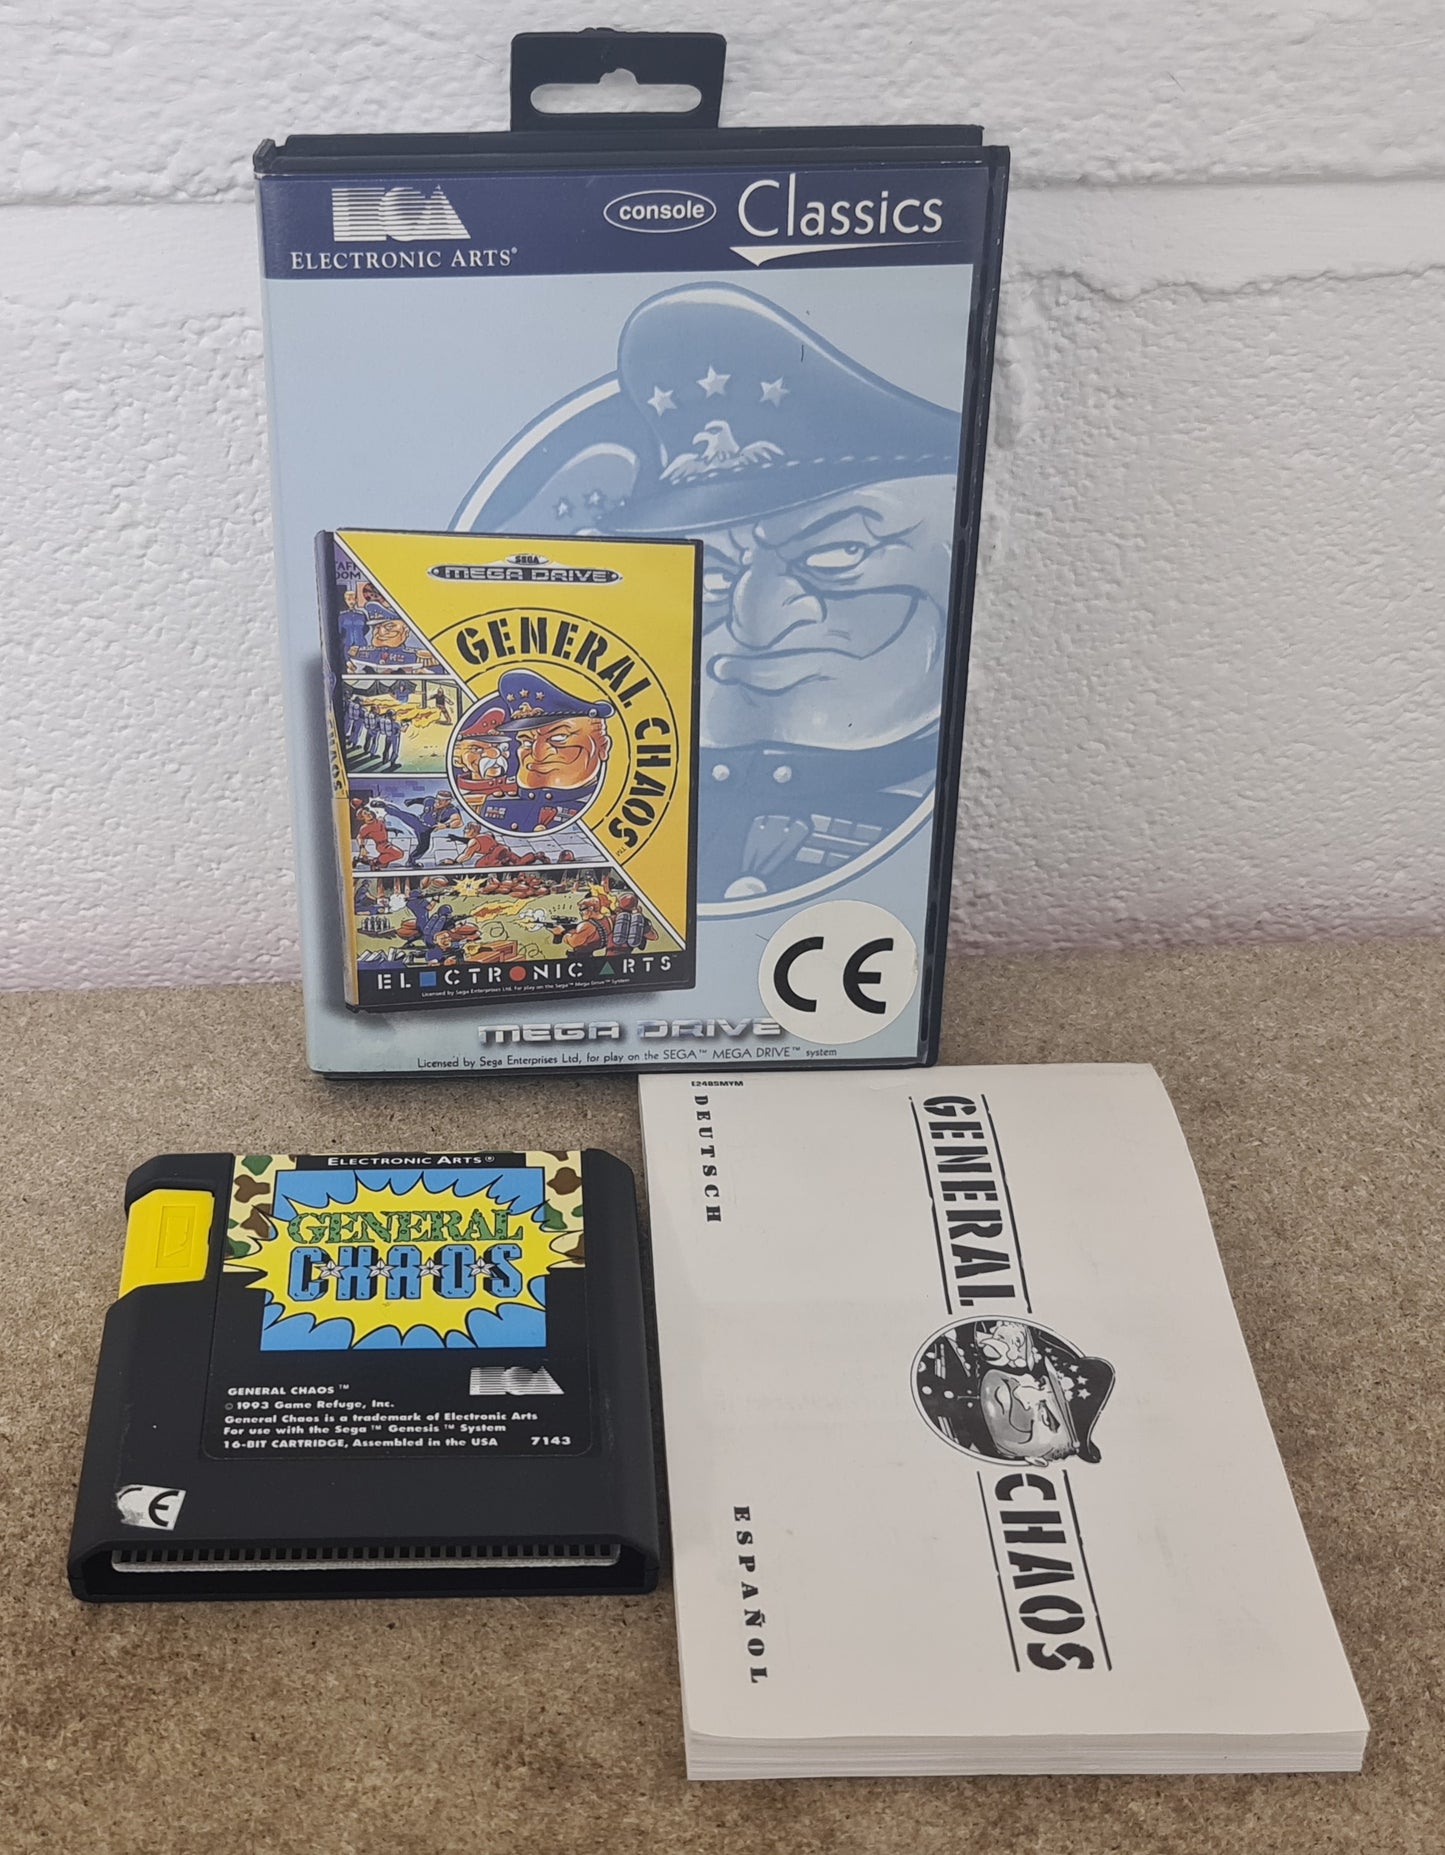 General Chaos Classics Sega Mega Drive Game